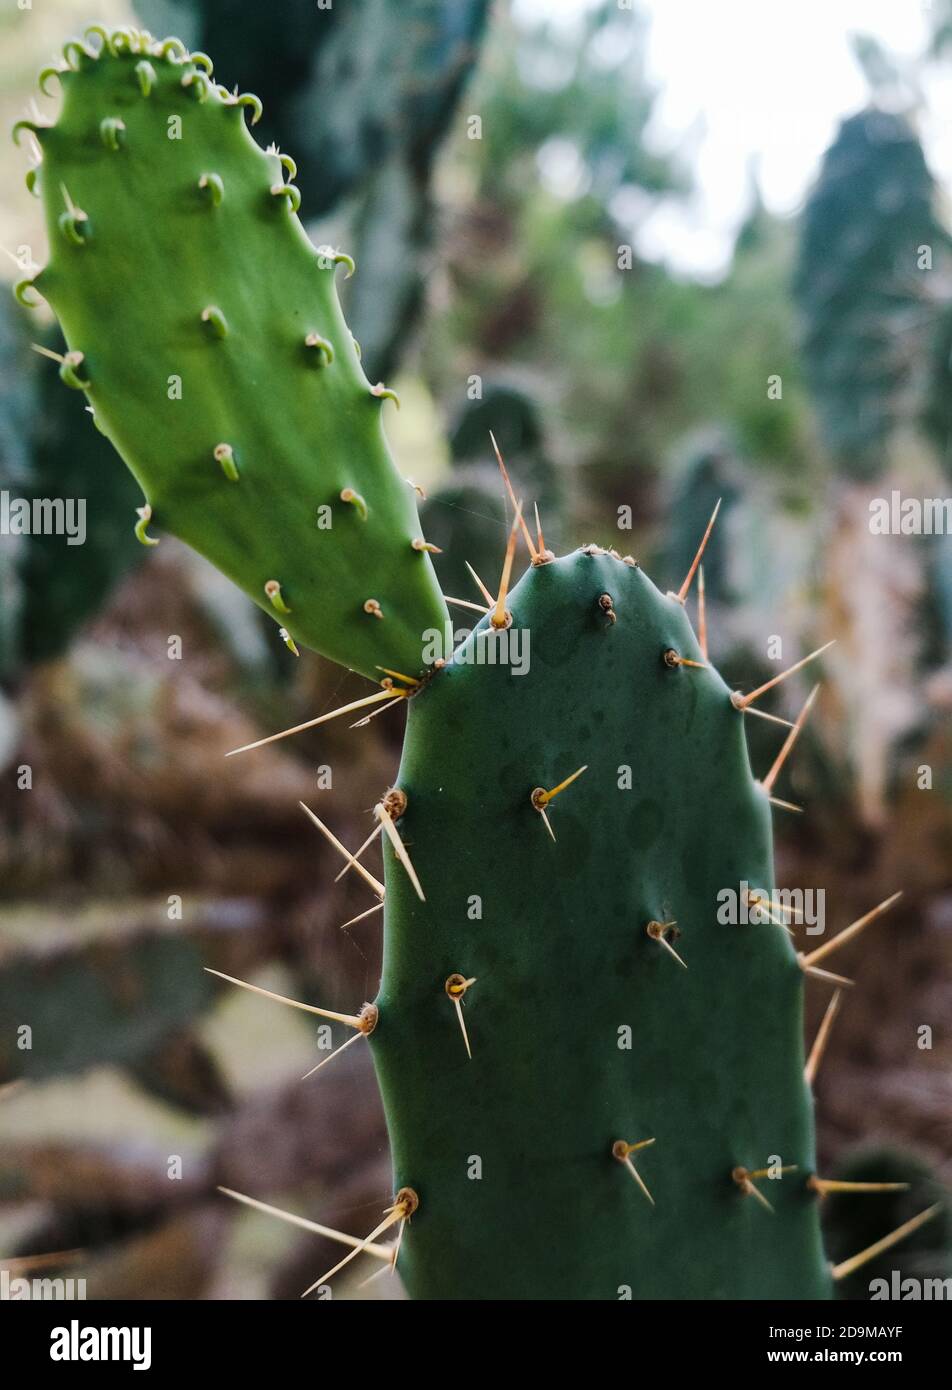 Schöne tropische Sukkulenten. Blindes Kaktusfeld der Kaktuskakteen. Nahaufnahme von grünen Kaktusblättern mit scharfen Stacheln. Wachsende natürliche Kakteen im Freien Stockfoto